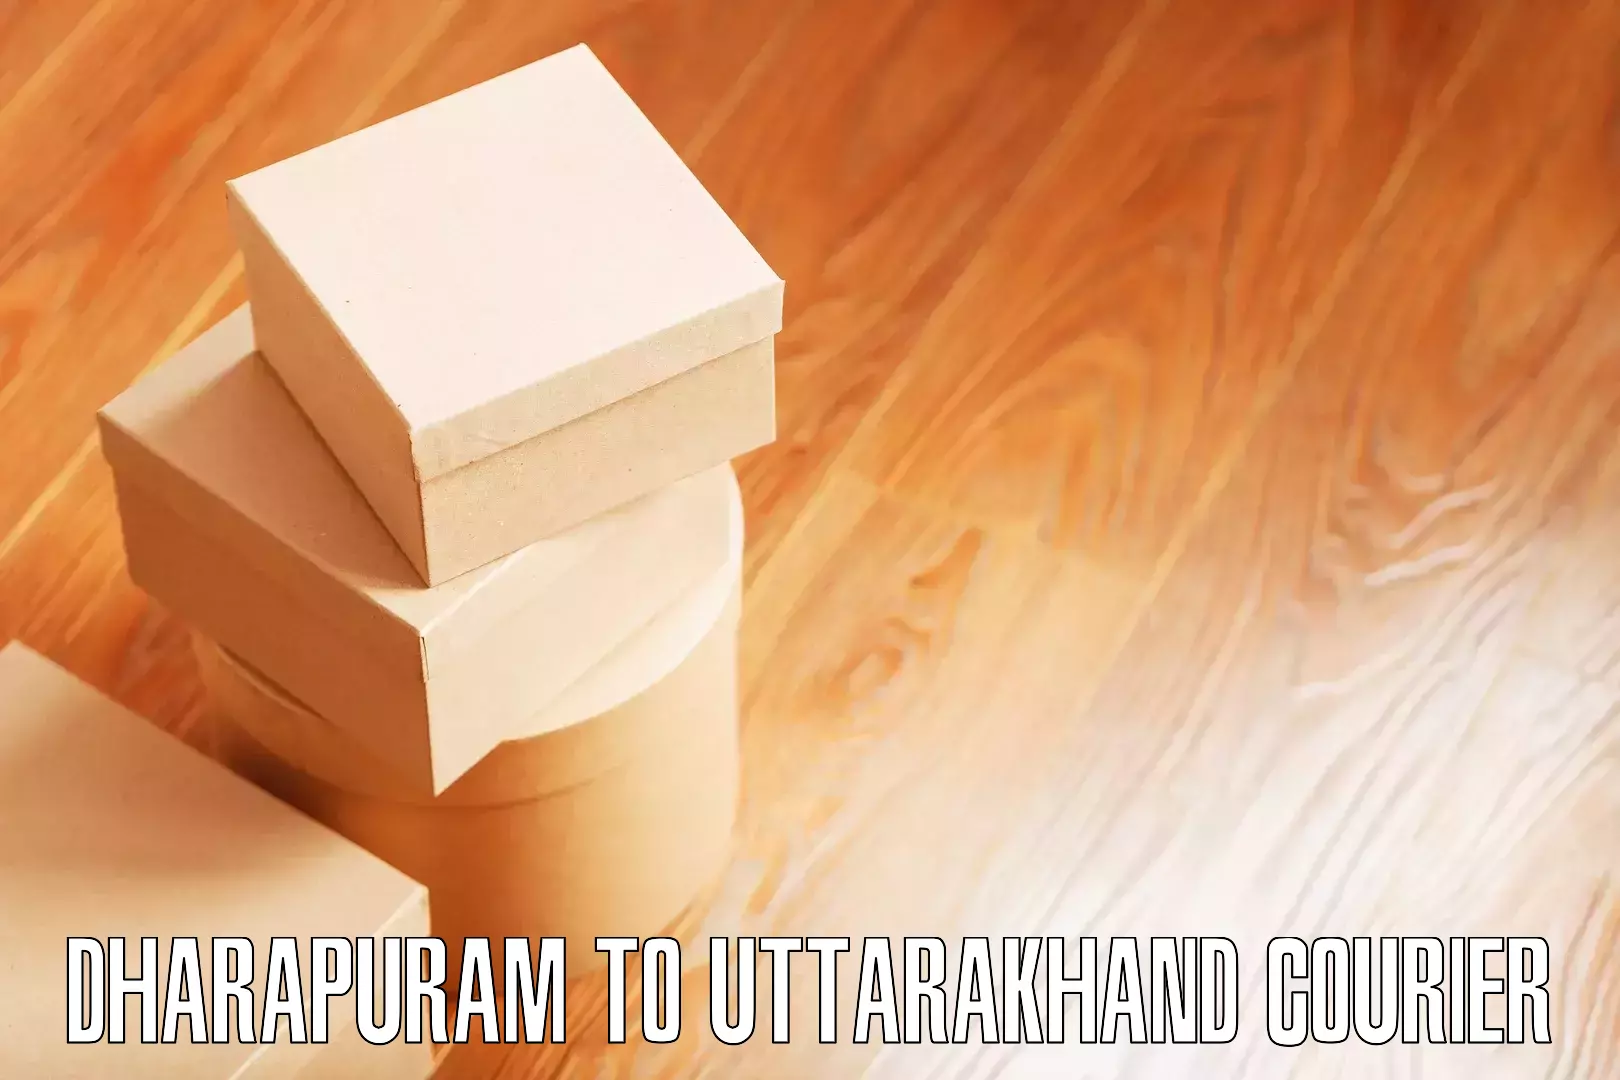 Furniture transport solutions Dharapuram to Uttarakhand